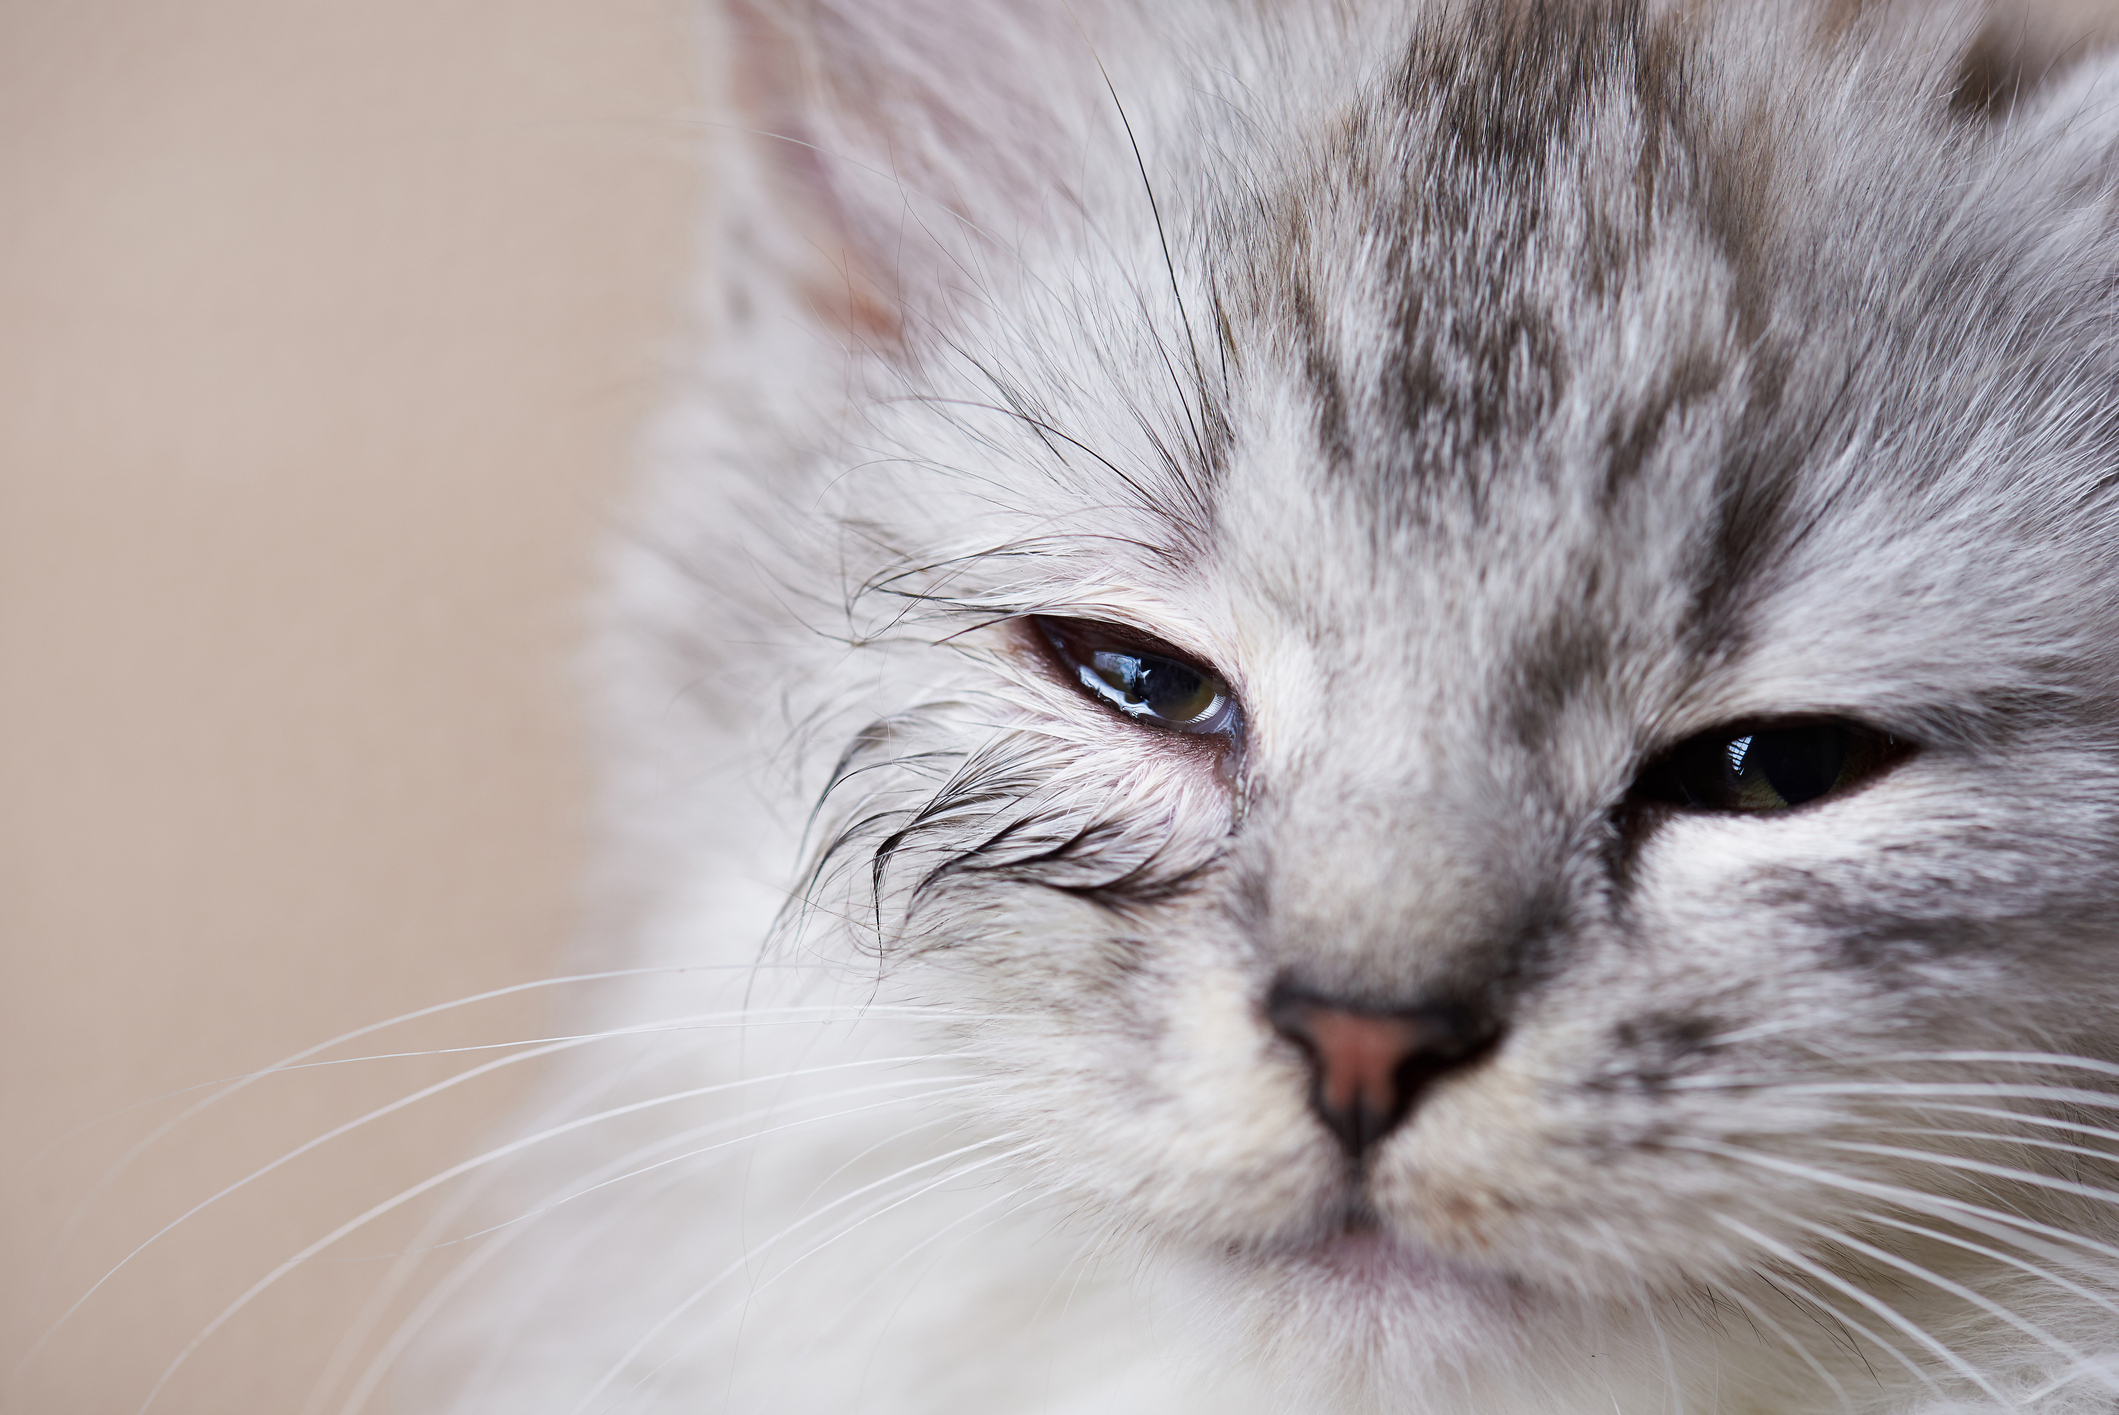 Cute grey tabby kitten with a leaky eye